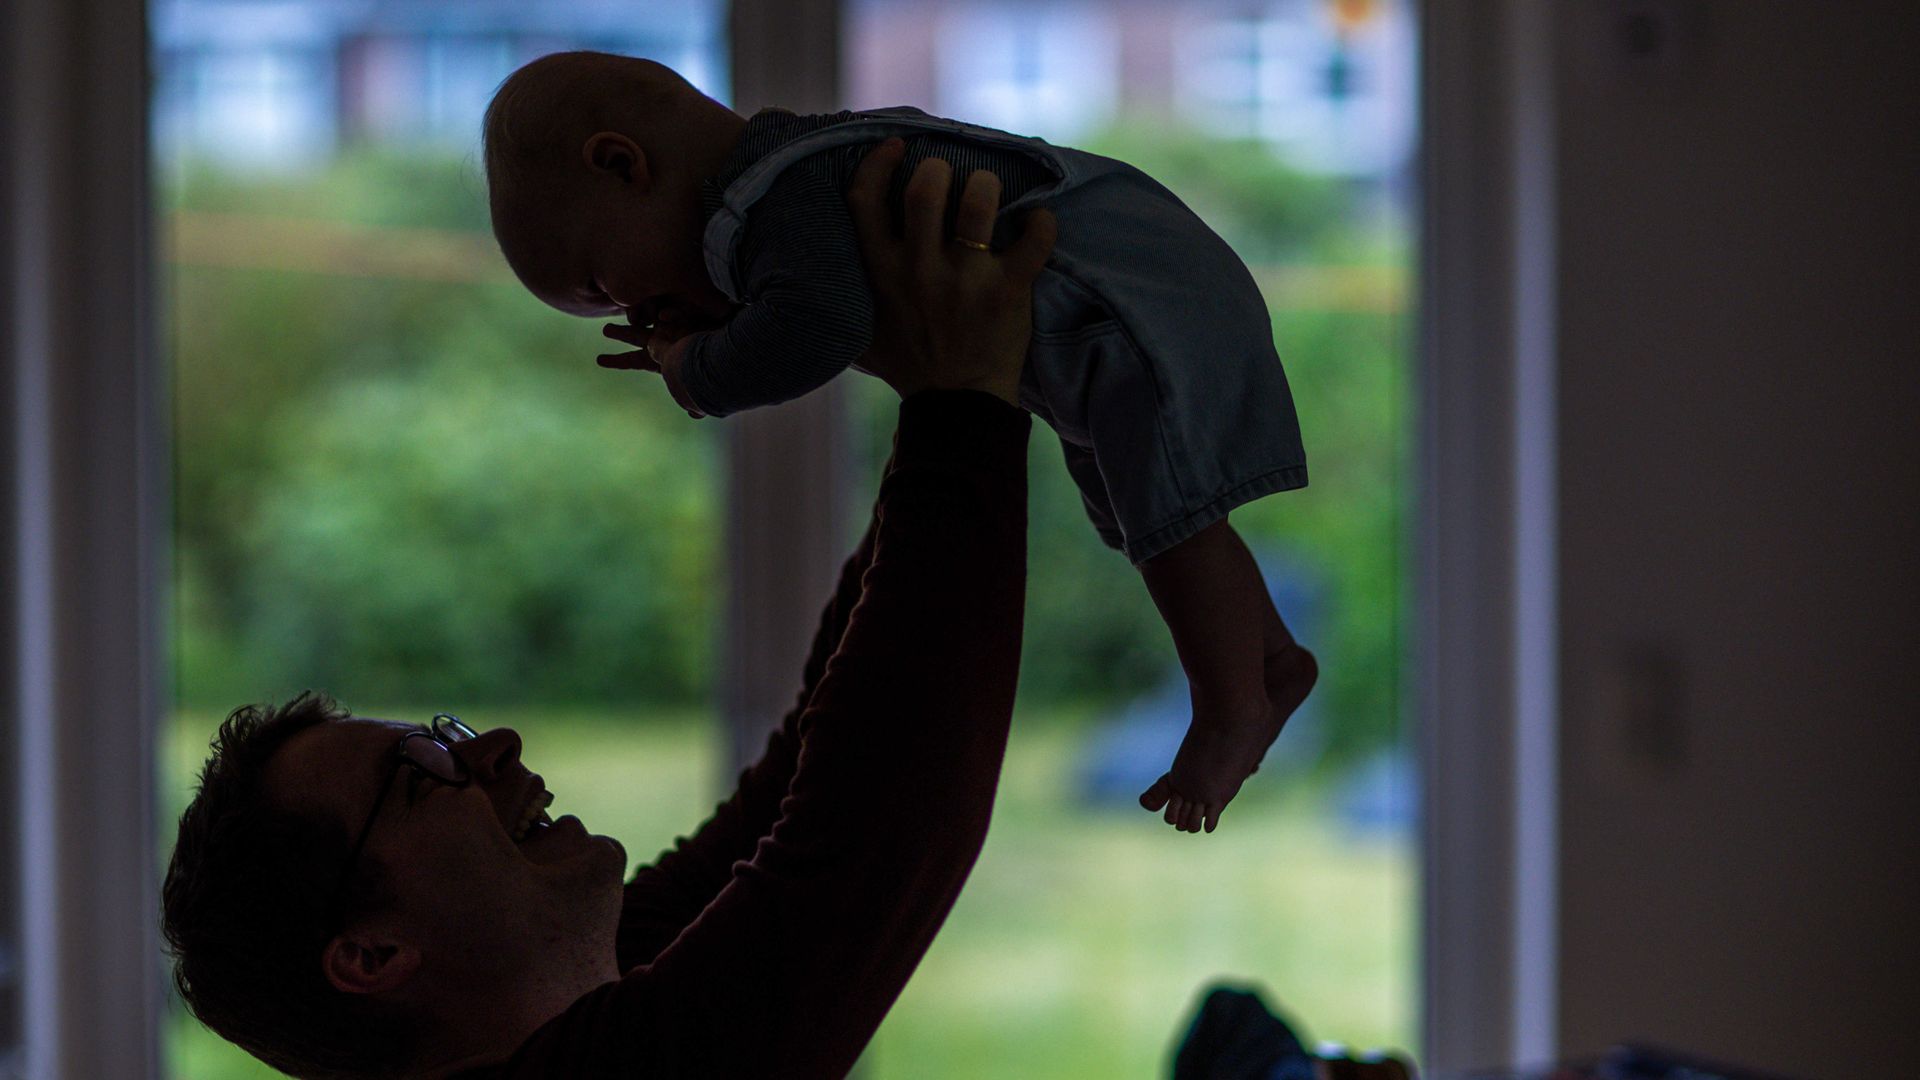 bundessozialgericht zur rente: werden väter bei kindererziehungszeiten diskriminiert?